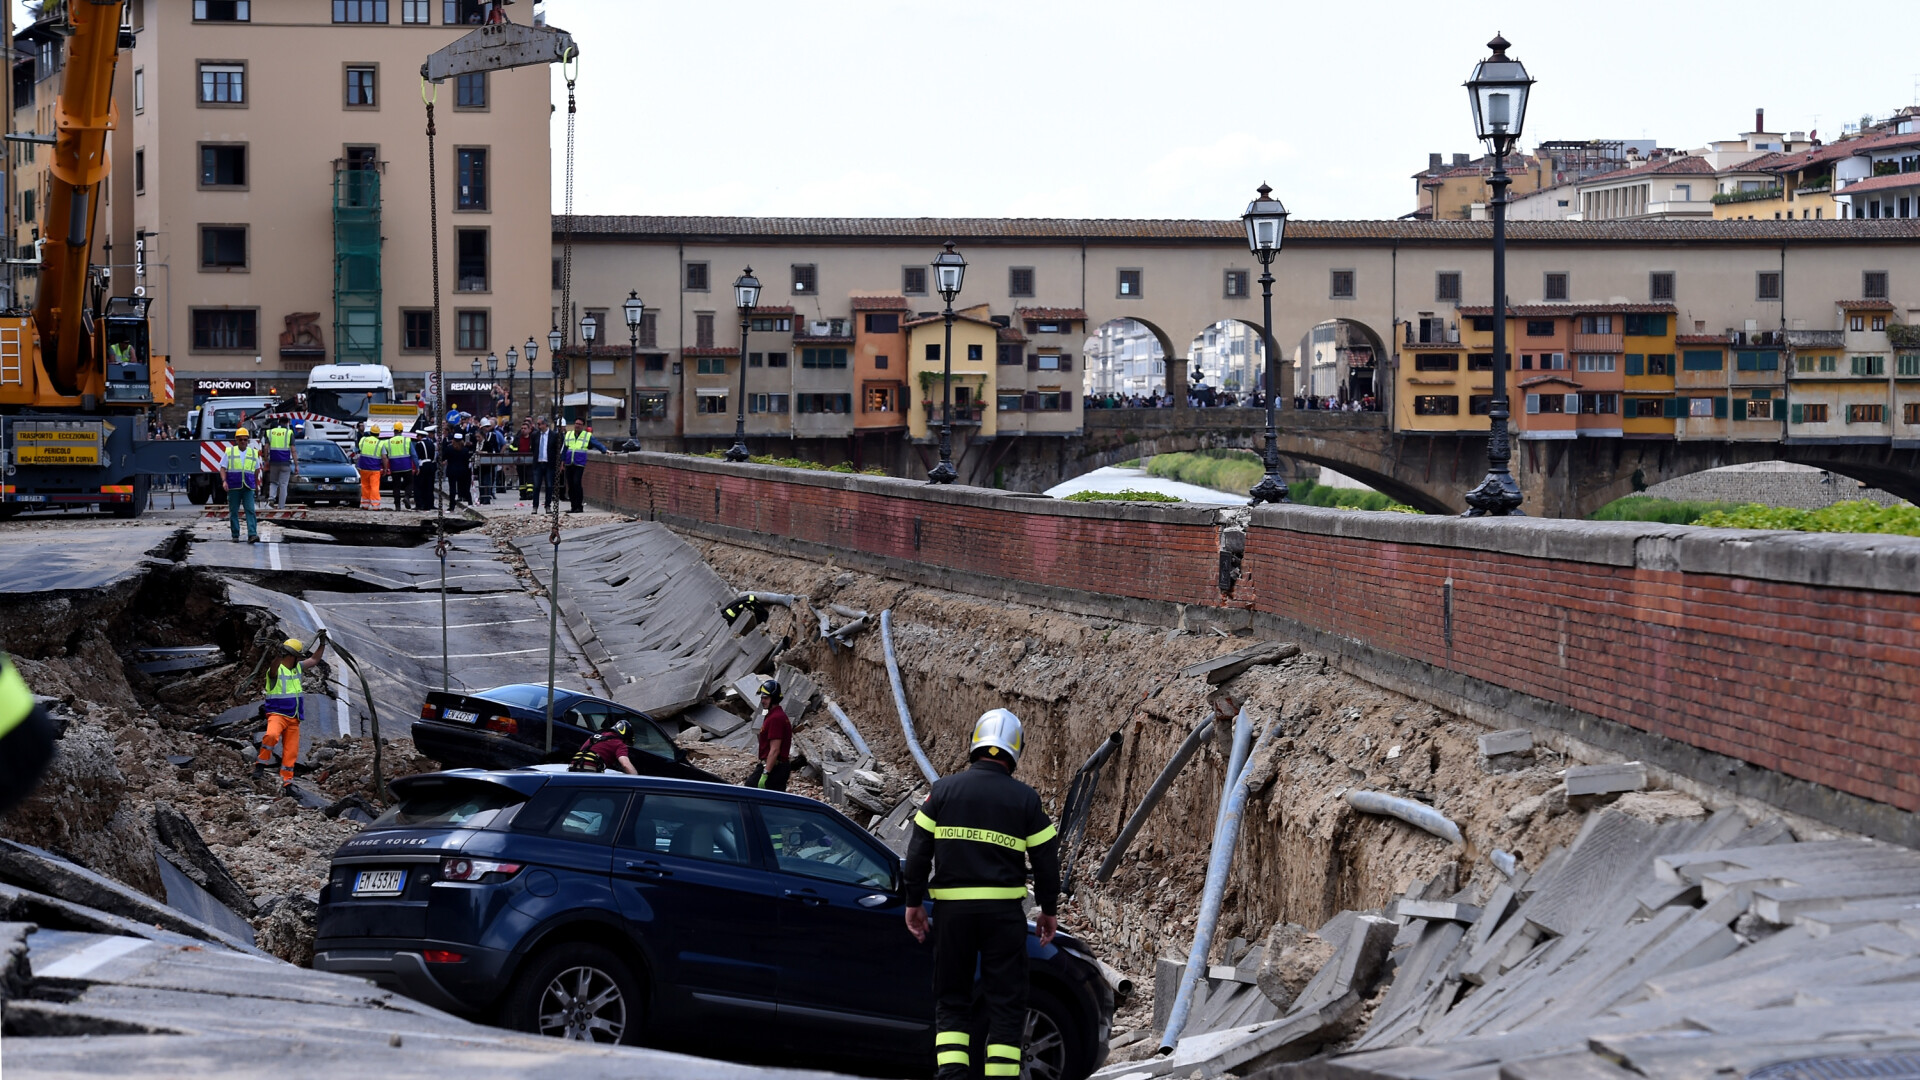 20 de masini au fost inghitite de asfalt in centrul Florentei